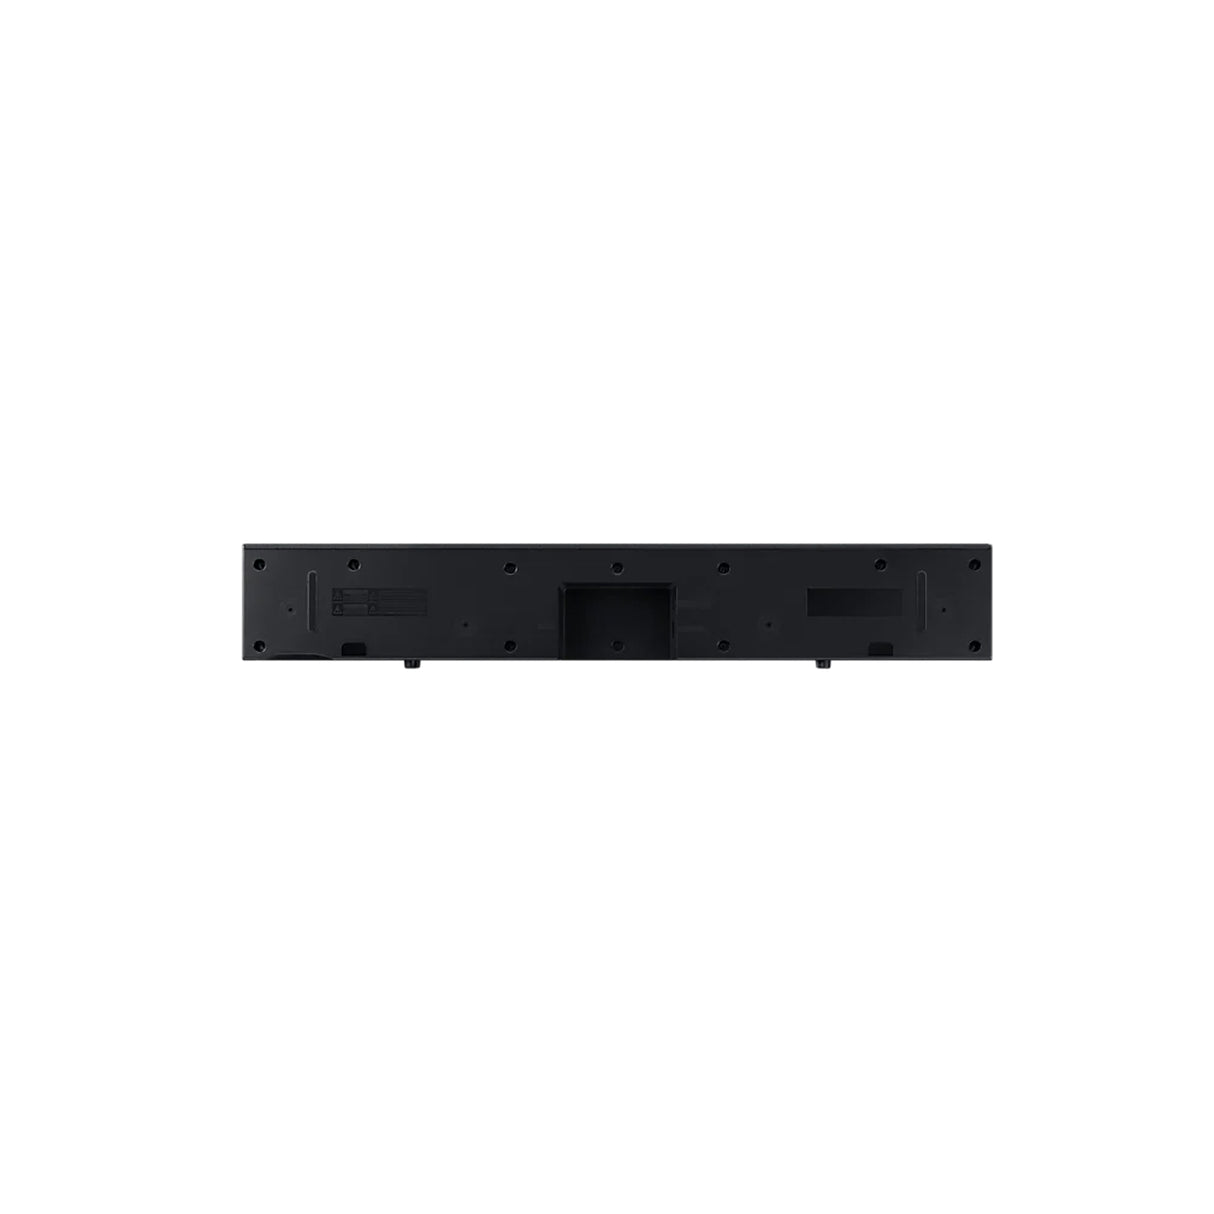 Samsung HW-C400 -  2.0 Channel Dolby Digital Soundbar 40W